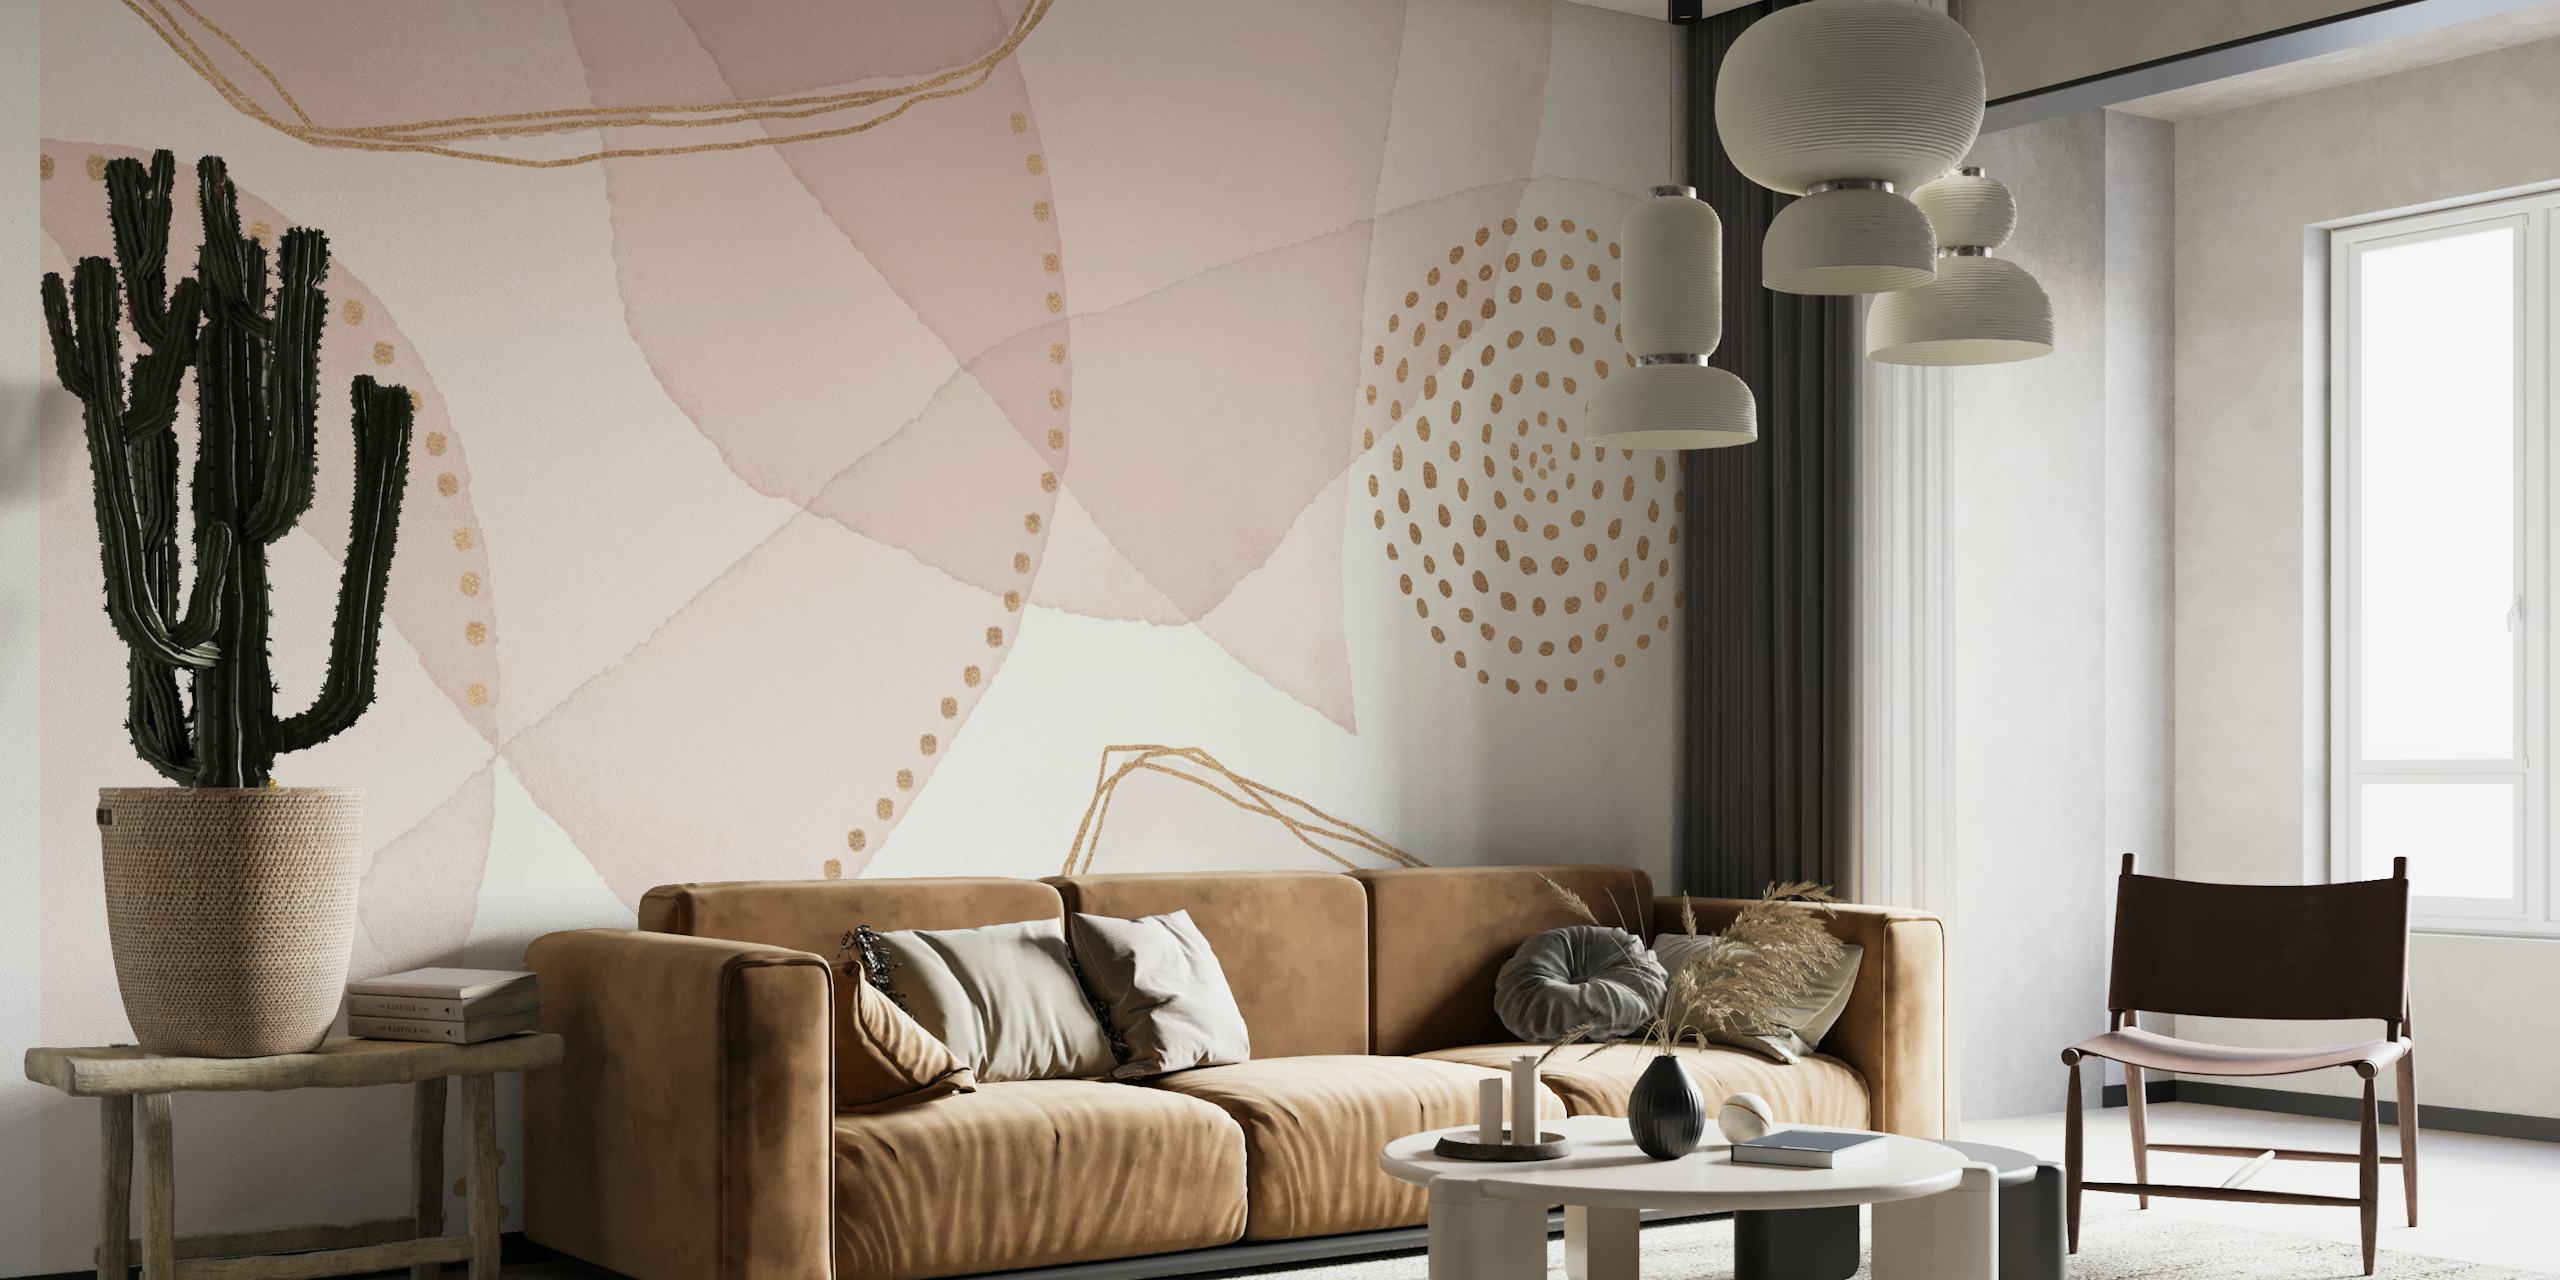 Papier peint mural de formes abstraites pastel avec une ambiance de luxe bohème